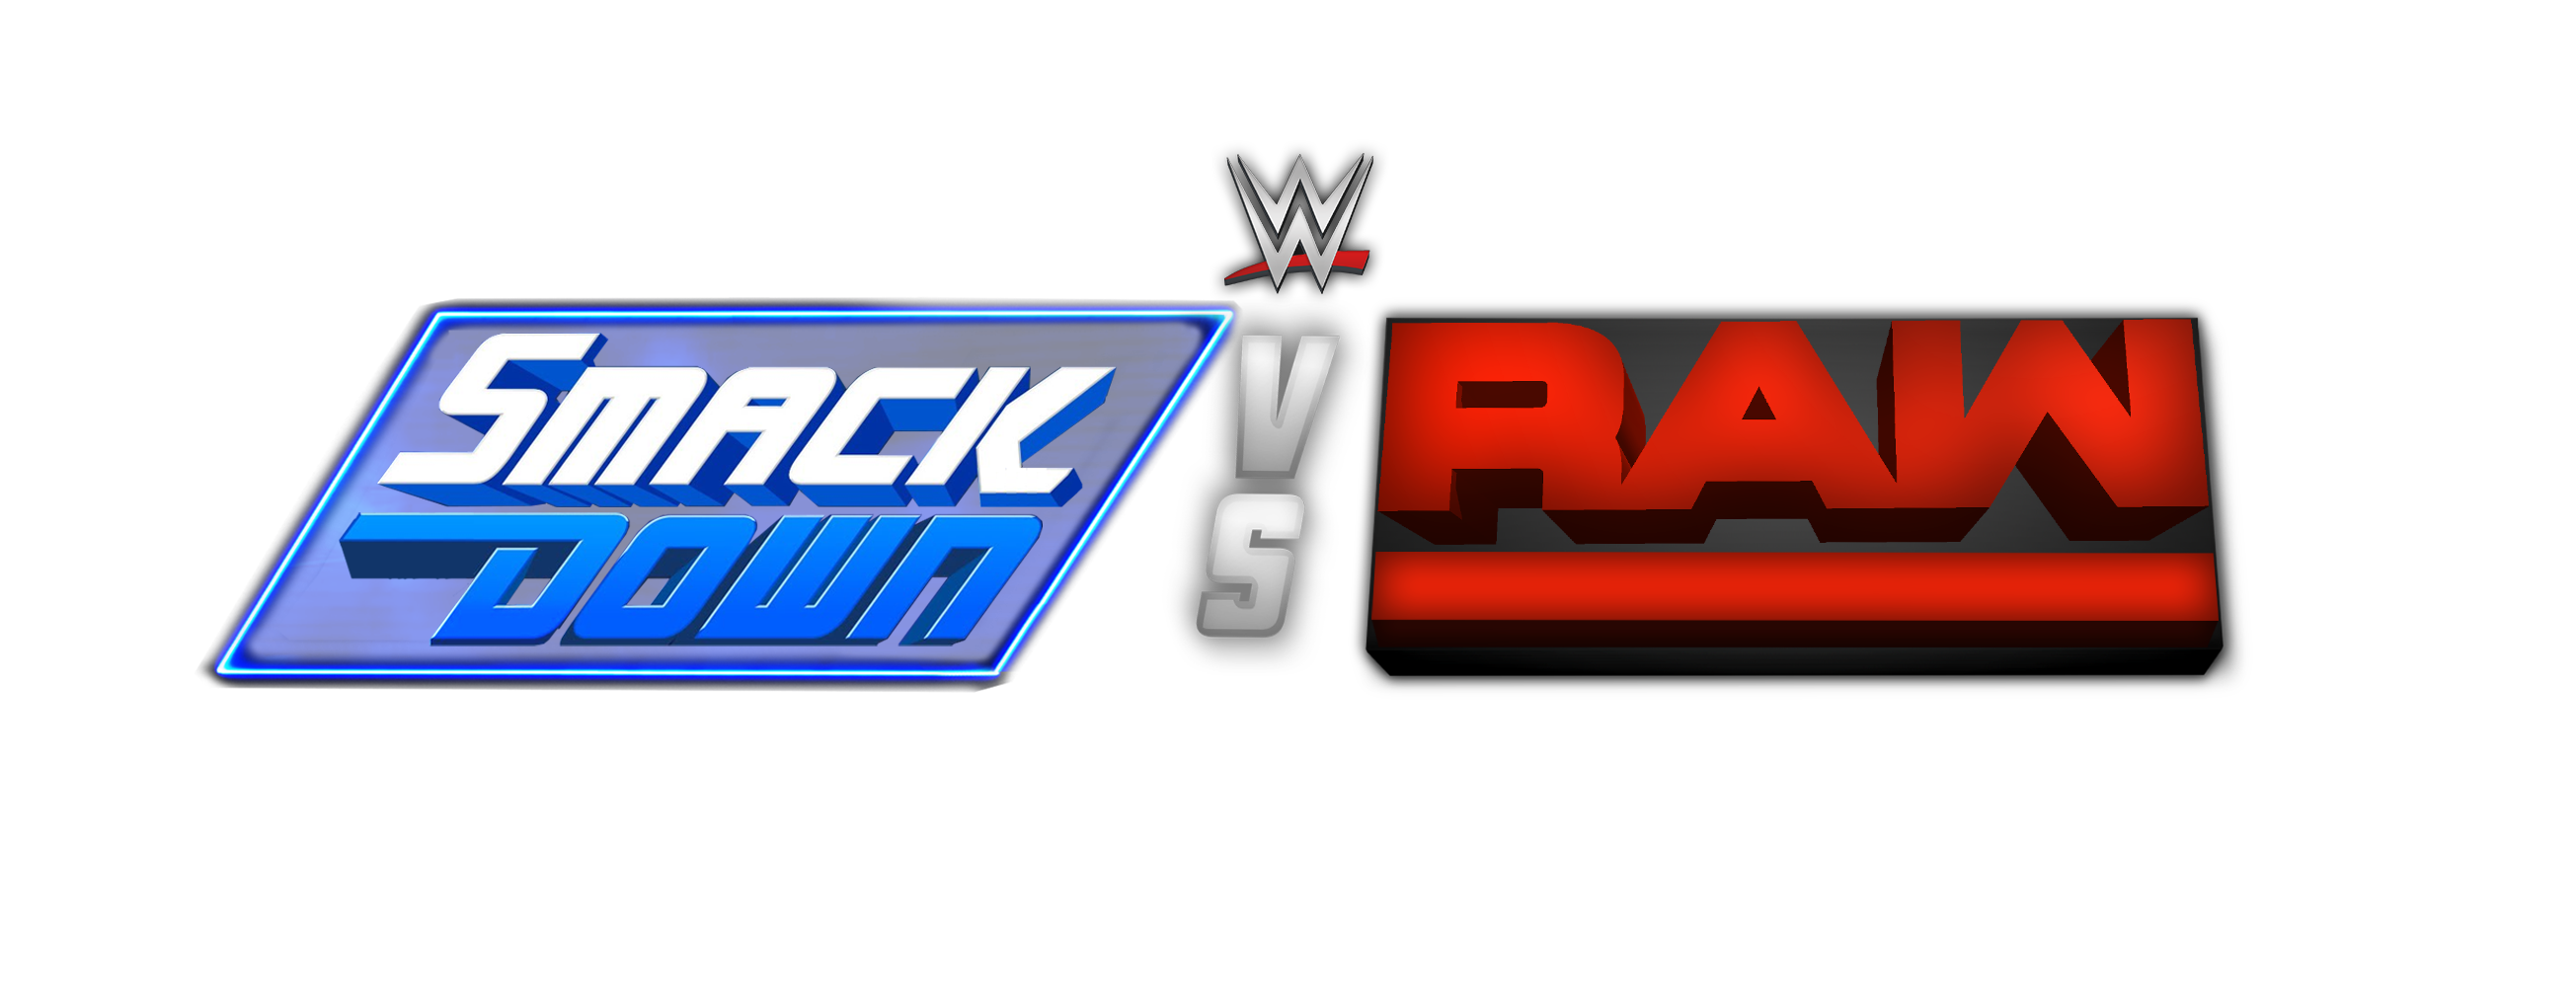 File:WWE SmackDown vs Raw gen